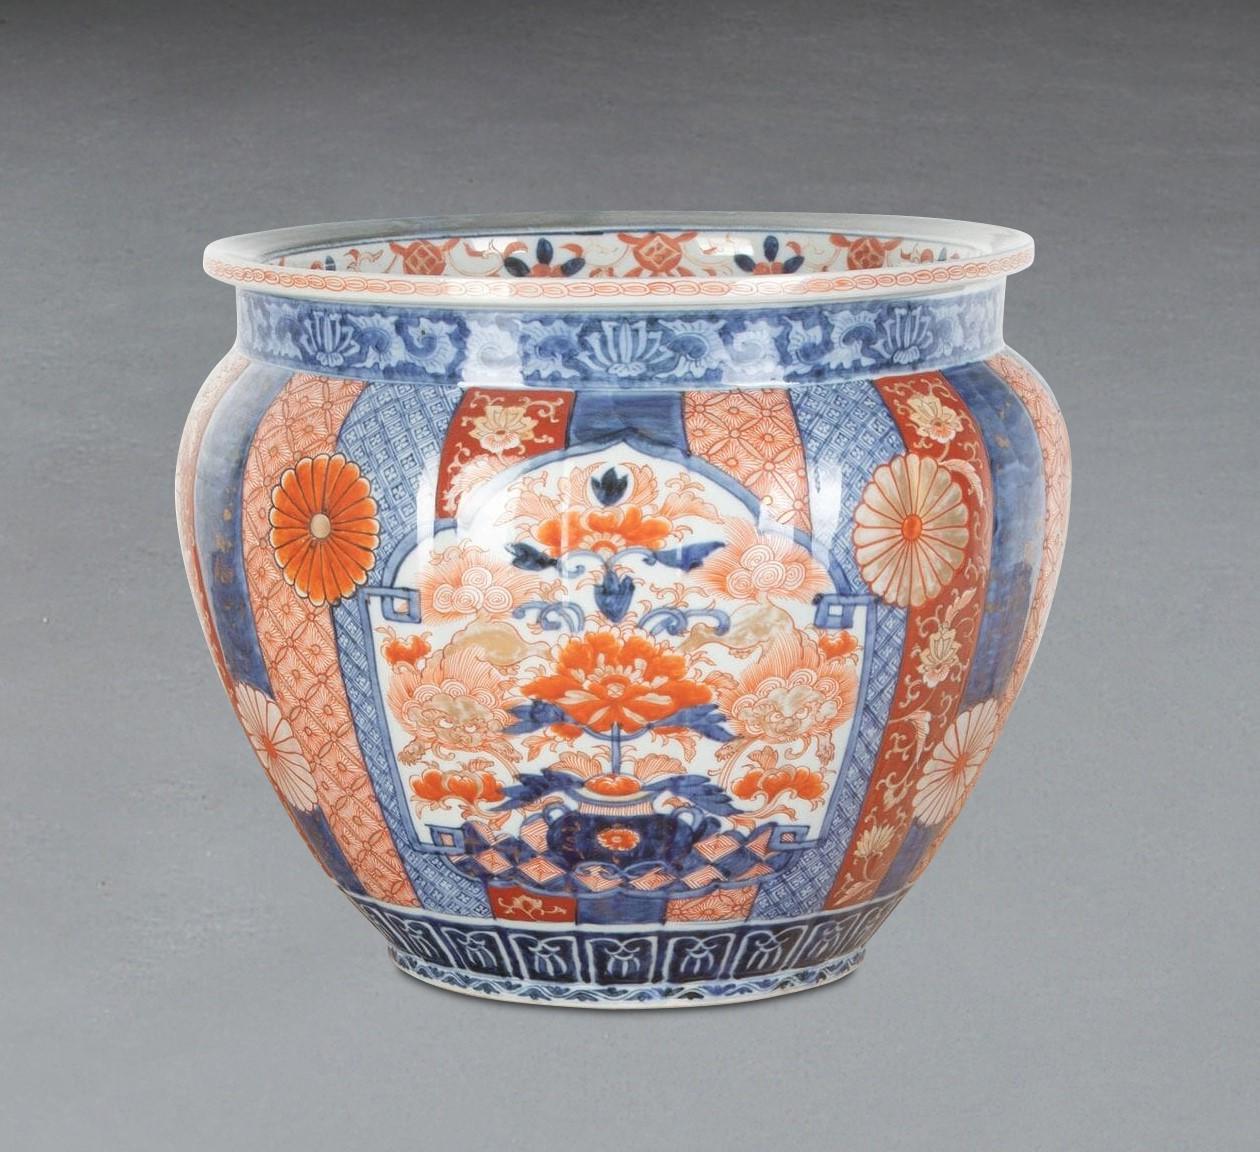 Eine große japanische Imari-Schale aus dem 19. Jahrhundert in gerippter Form mit farbenfrohen, handgemalten Motiven auf jedem Segment und zentral angeordneten Blattwerken und Blumenköpfen. In ausgezeichnetem Zustand. Um 1880.

H: 28 cm (12